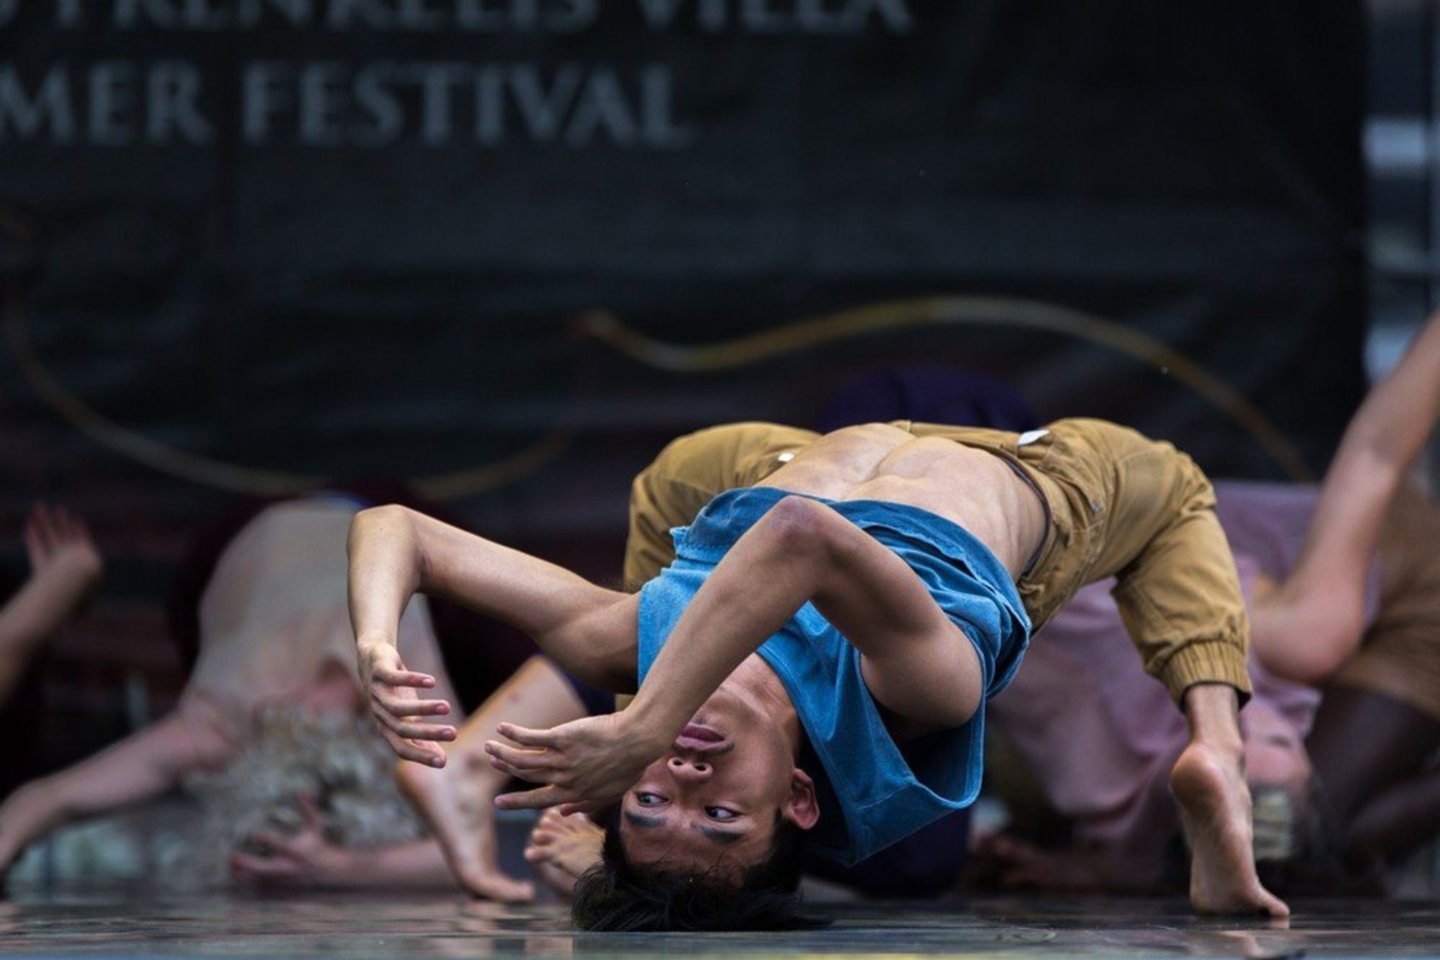  XVI tarptautinis Chaimo Frenkelio vilos vasaros festivalis prasidėjo Kauno šokio teatro „Aura“ spektakliu „Norėčiau būt paparčio žiedu“. <br> E.Tamošiūno nuotr.